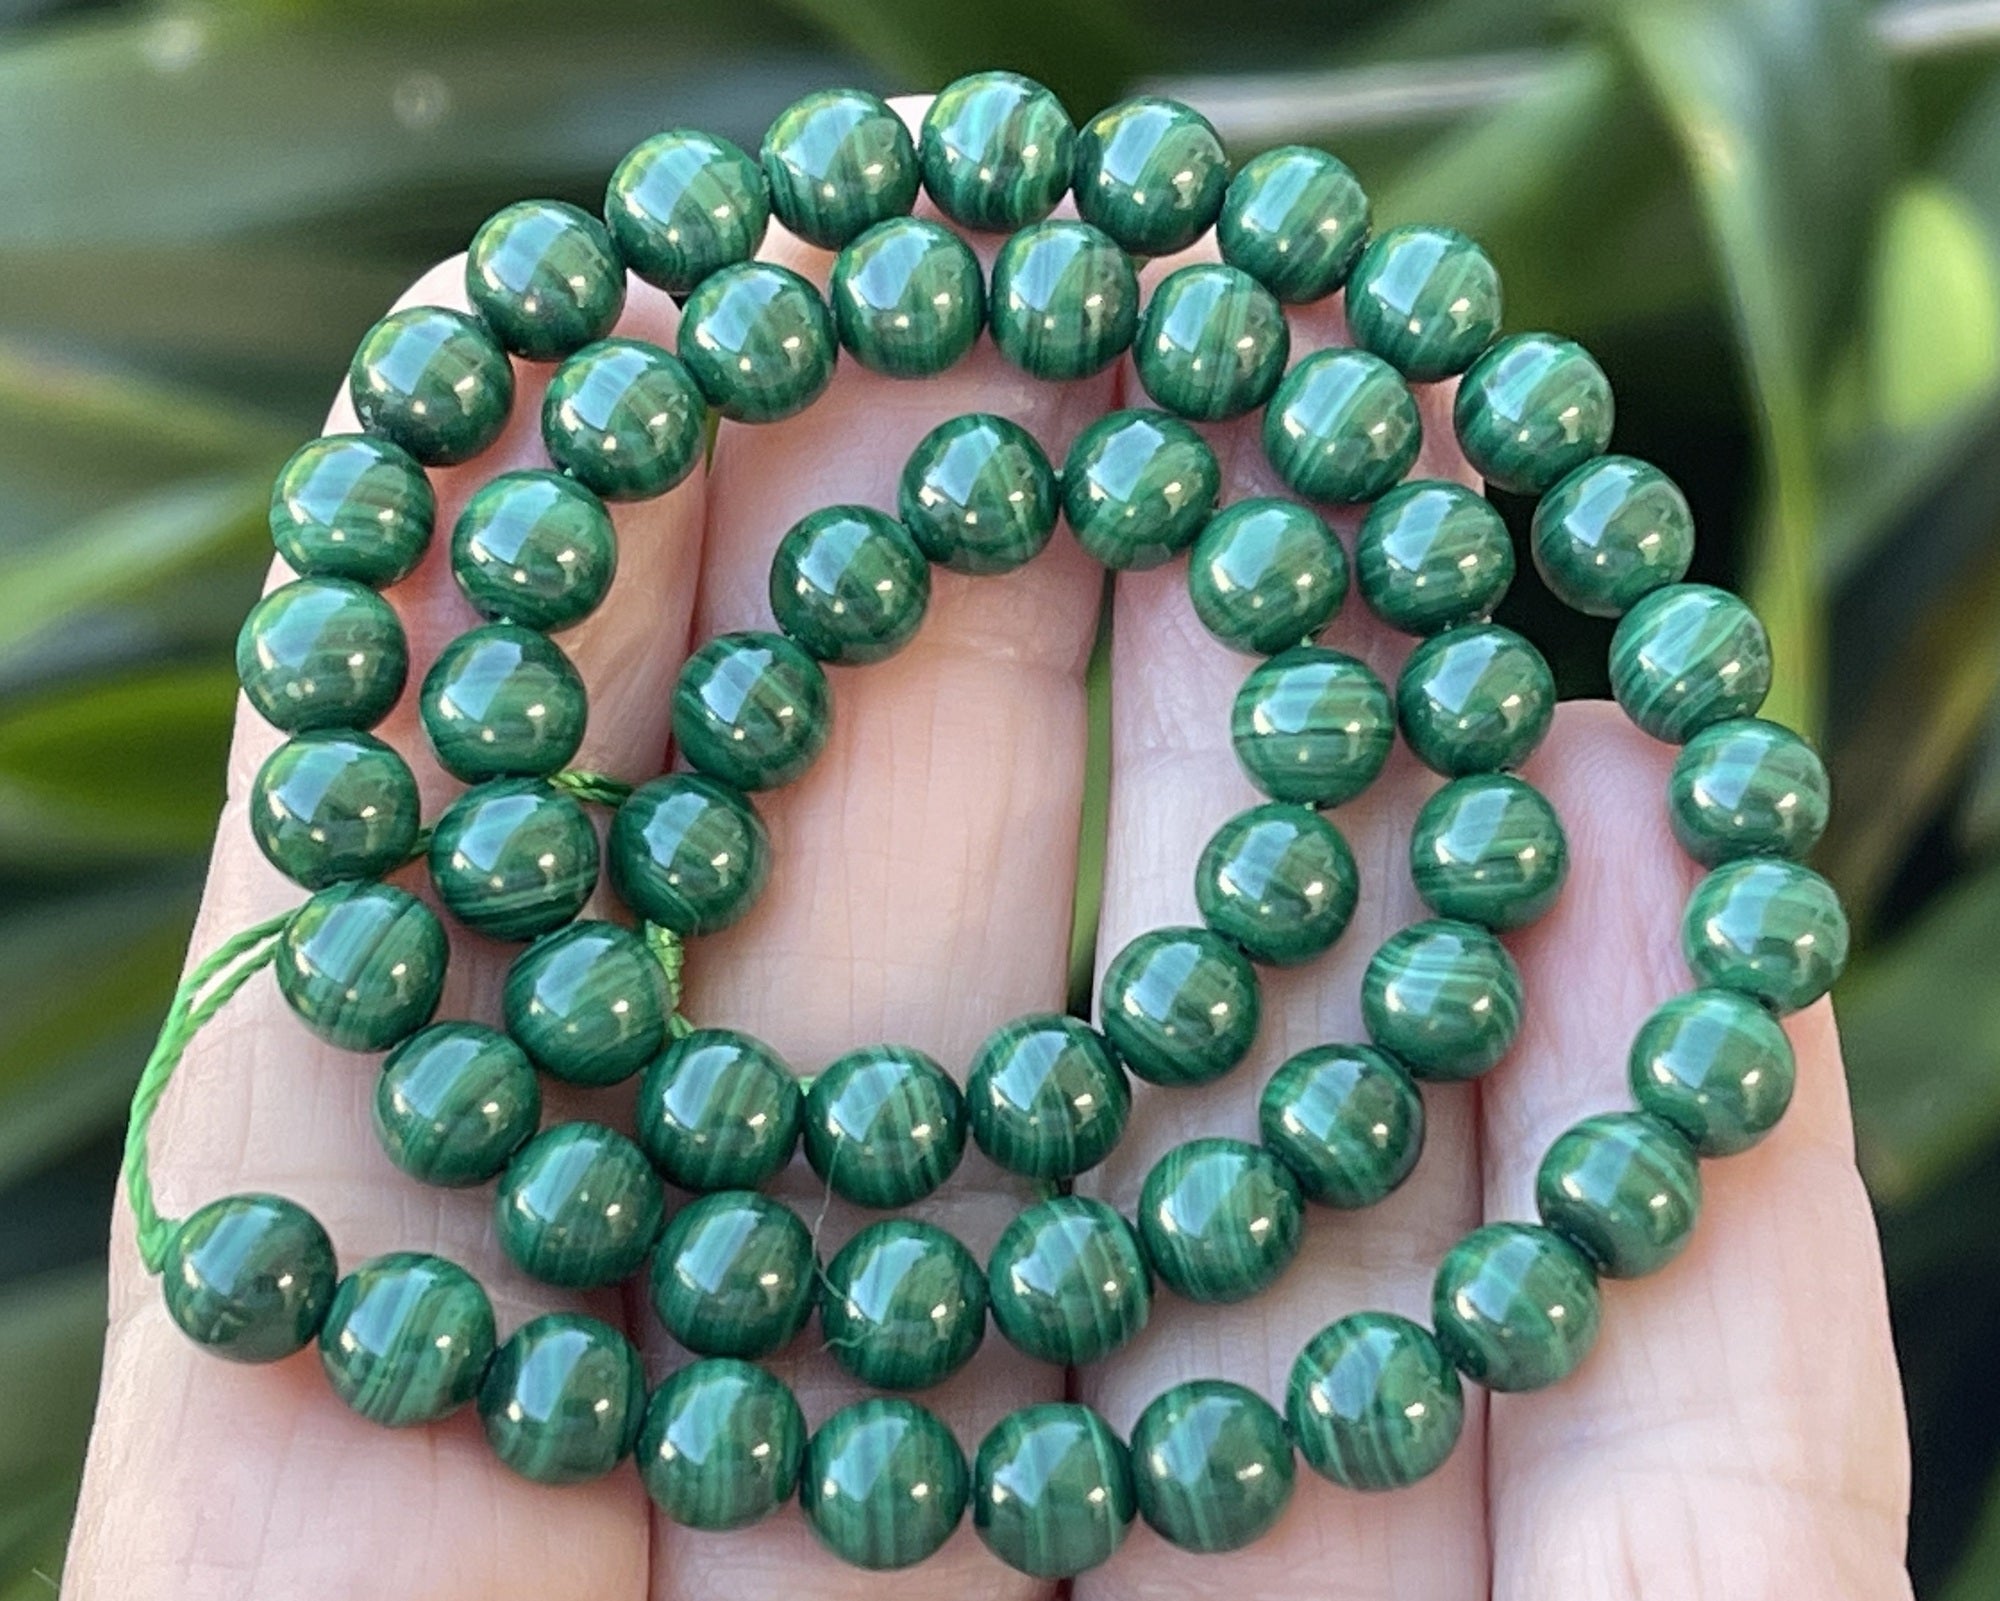 Malachite 6mm round natural gemstone beads 15" strand